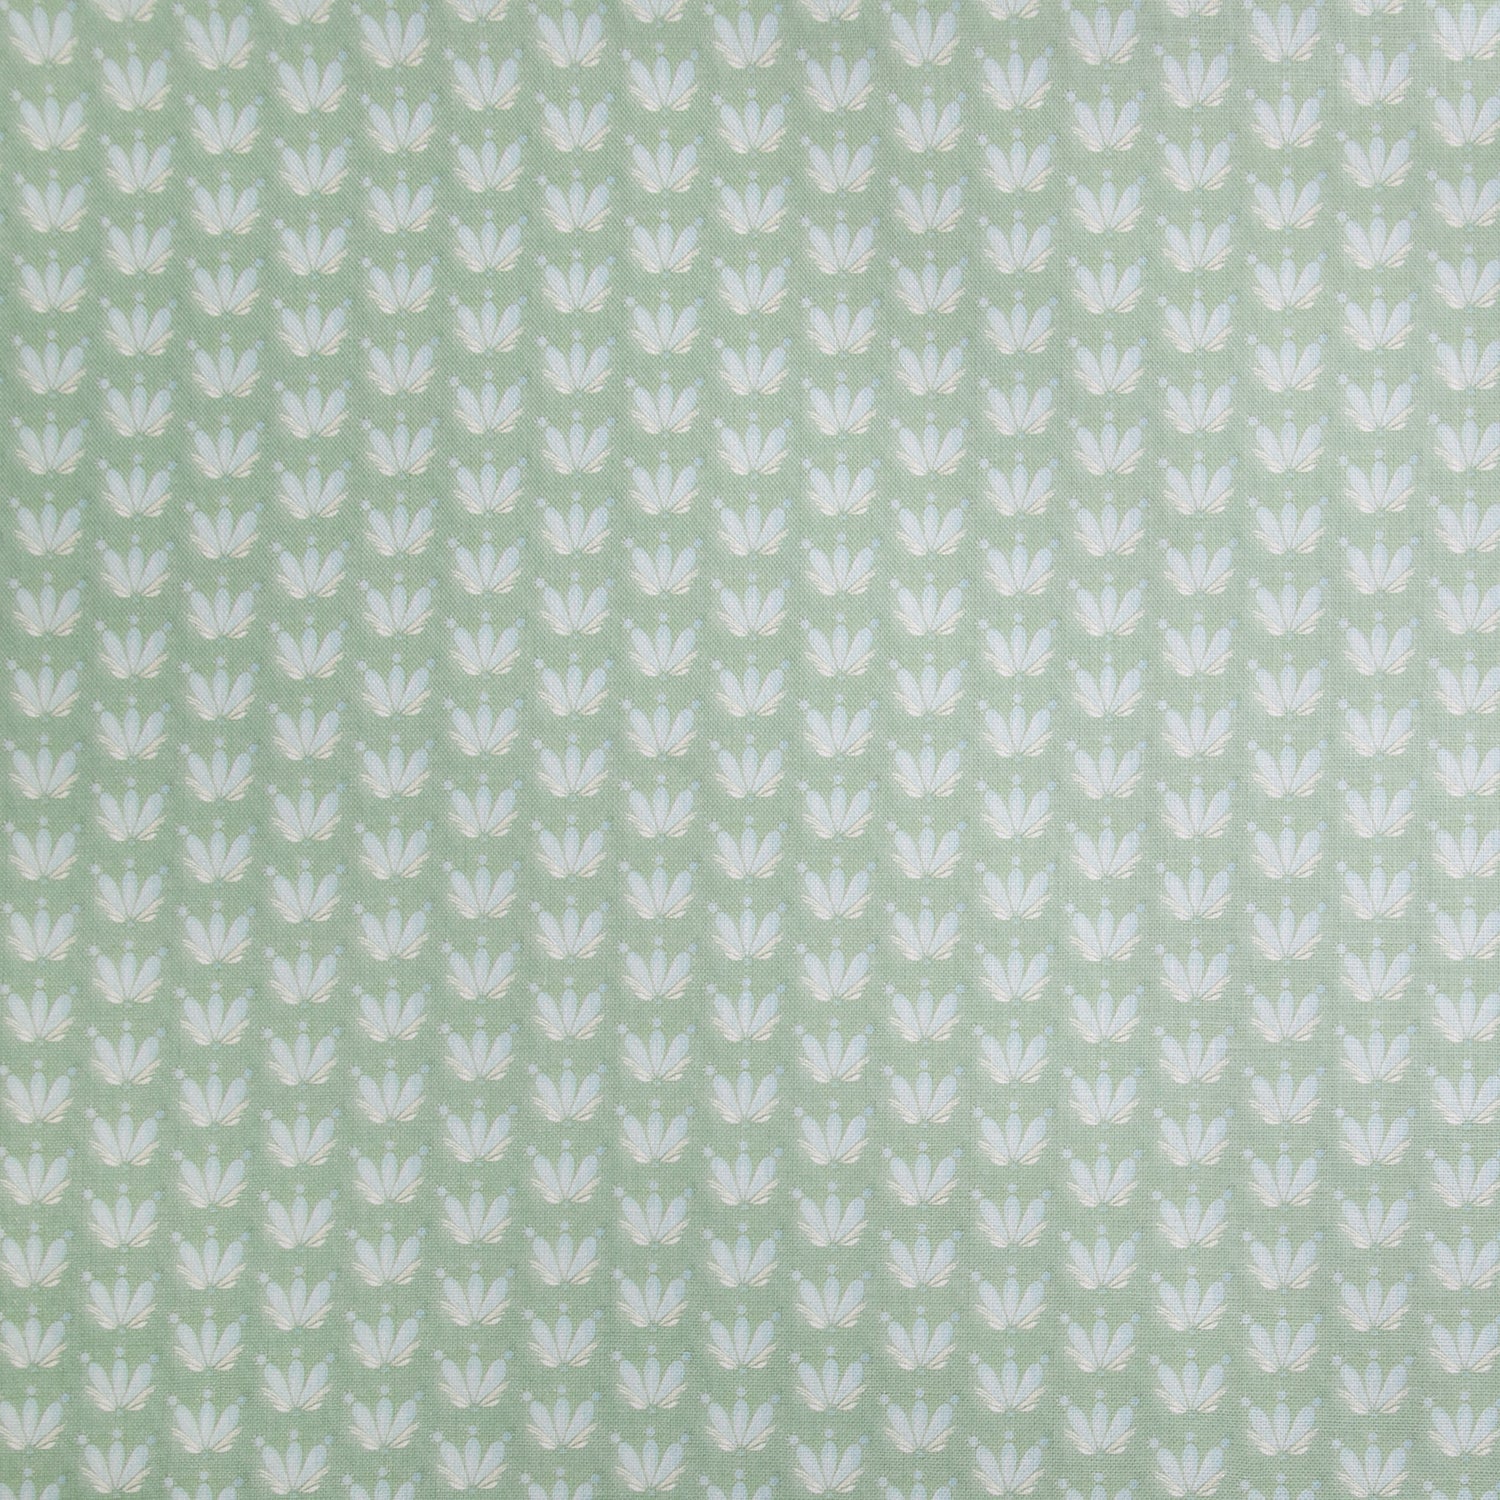 Green Floral Drop Repeat Linen Fabric